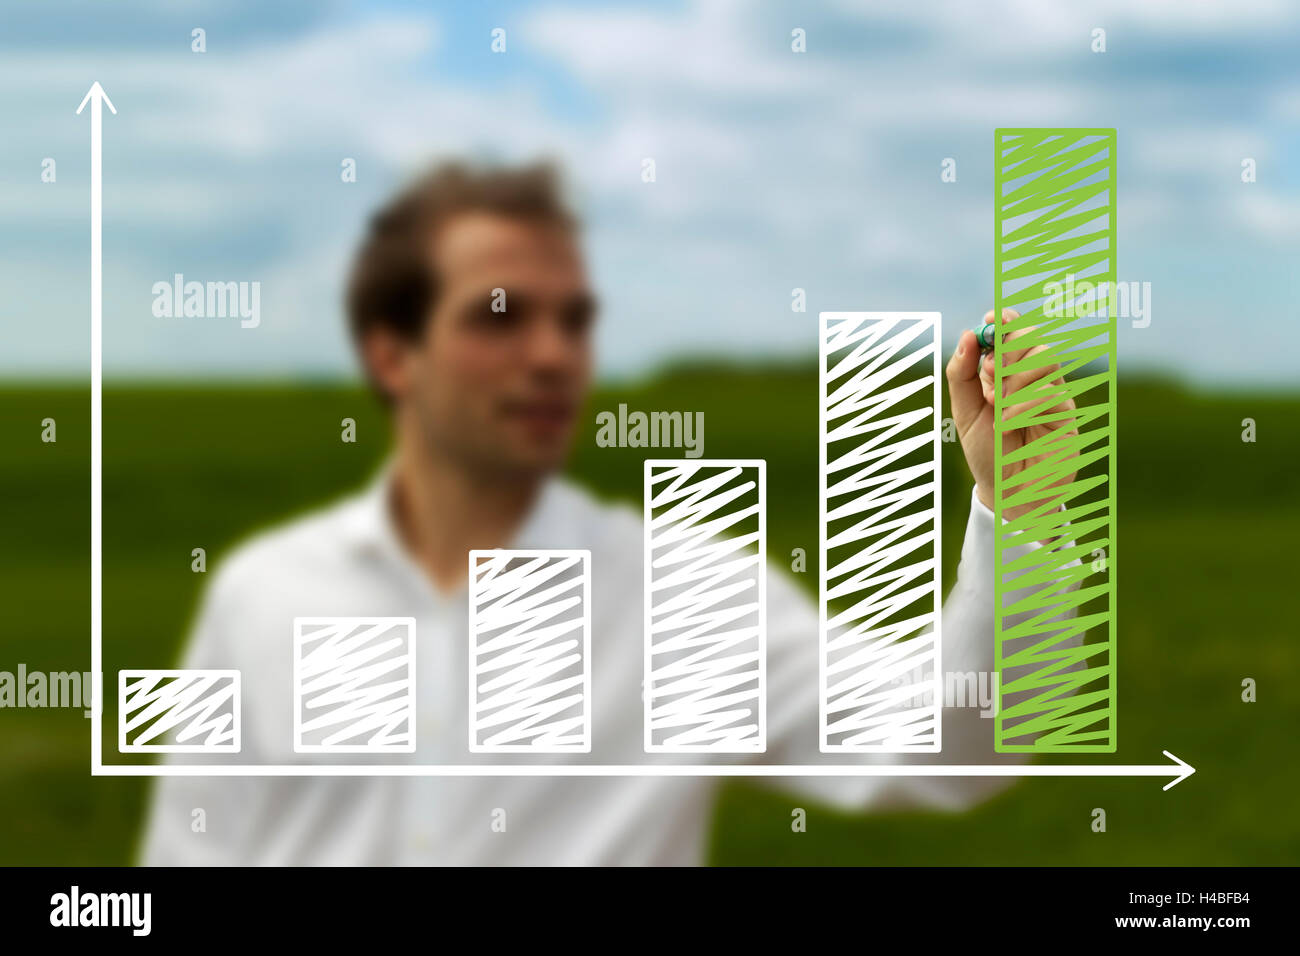 Homme d'affaires dynamique présentant la réussite d'un développement durable sur un graphique avec fond d'herbe verte Banque D'Images